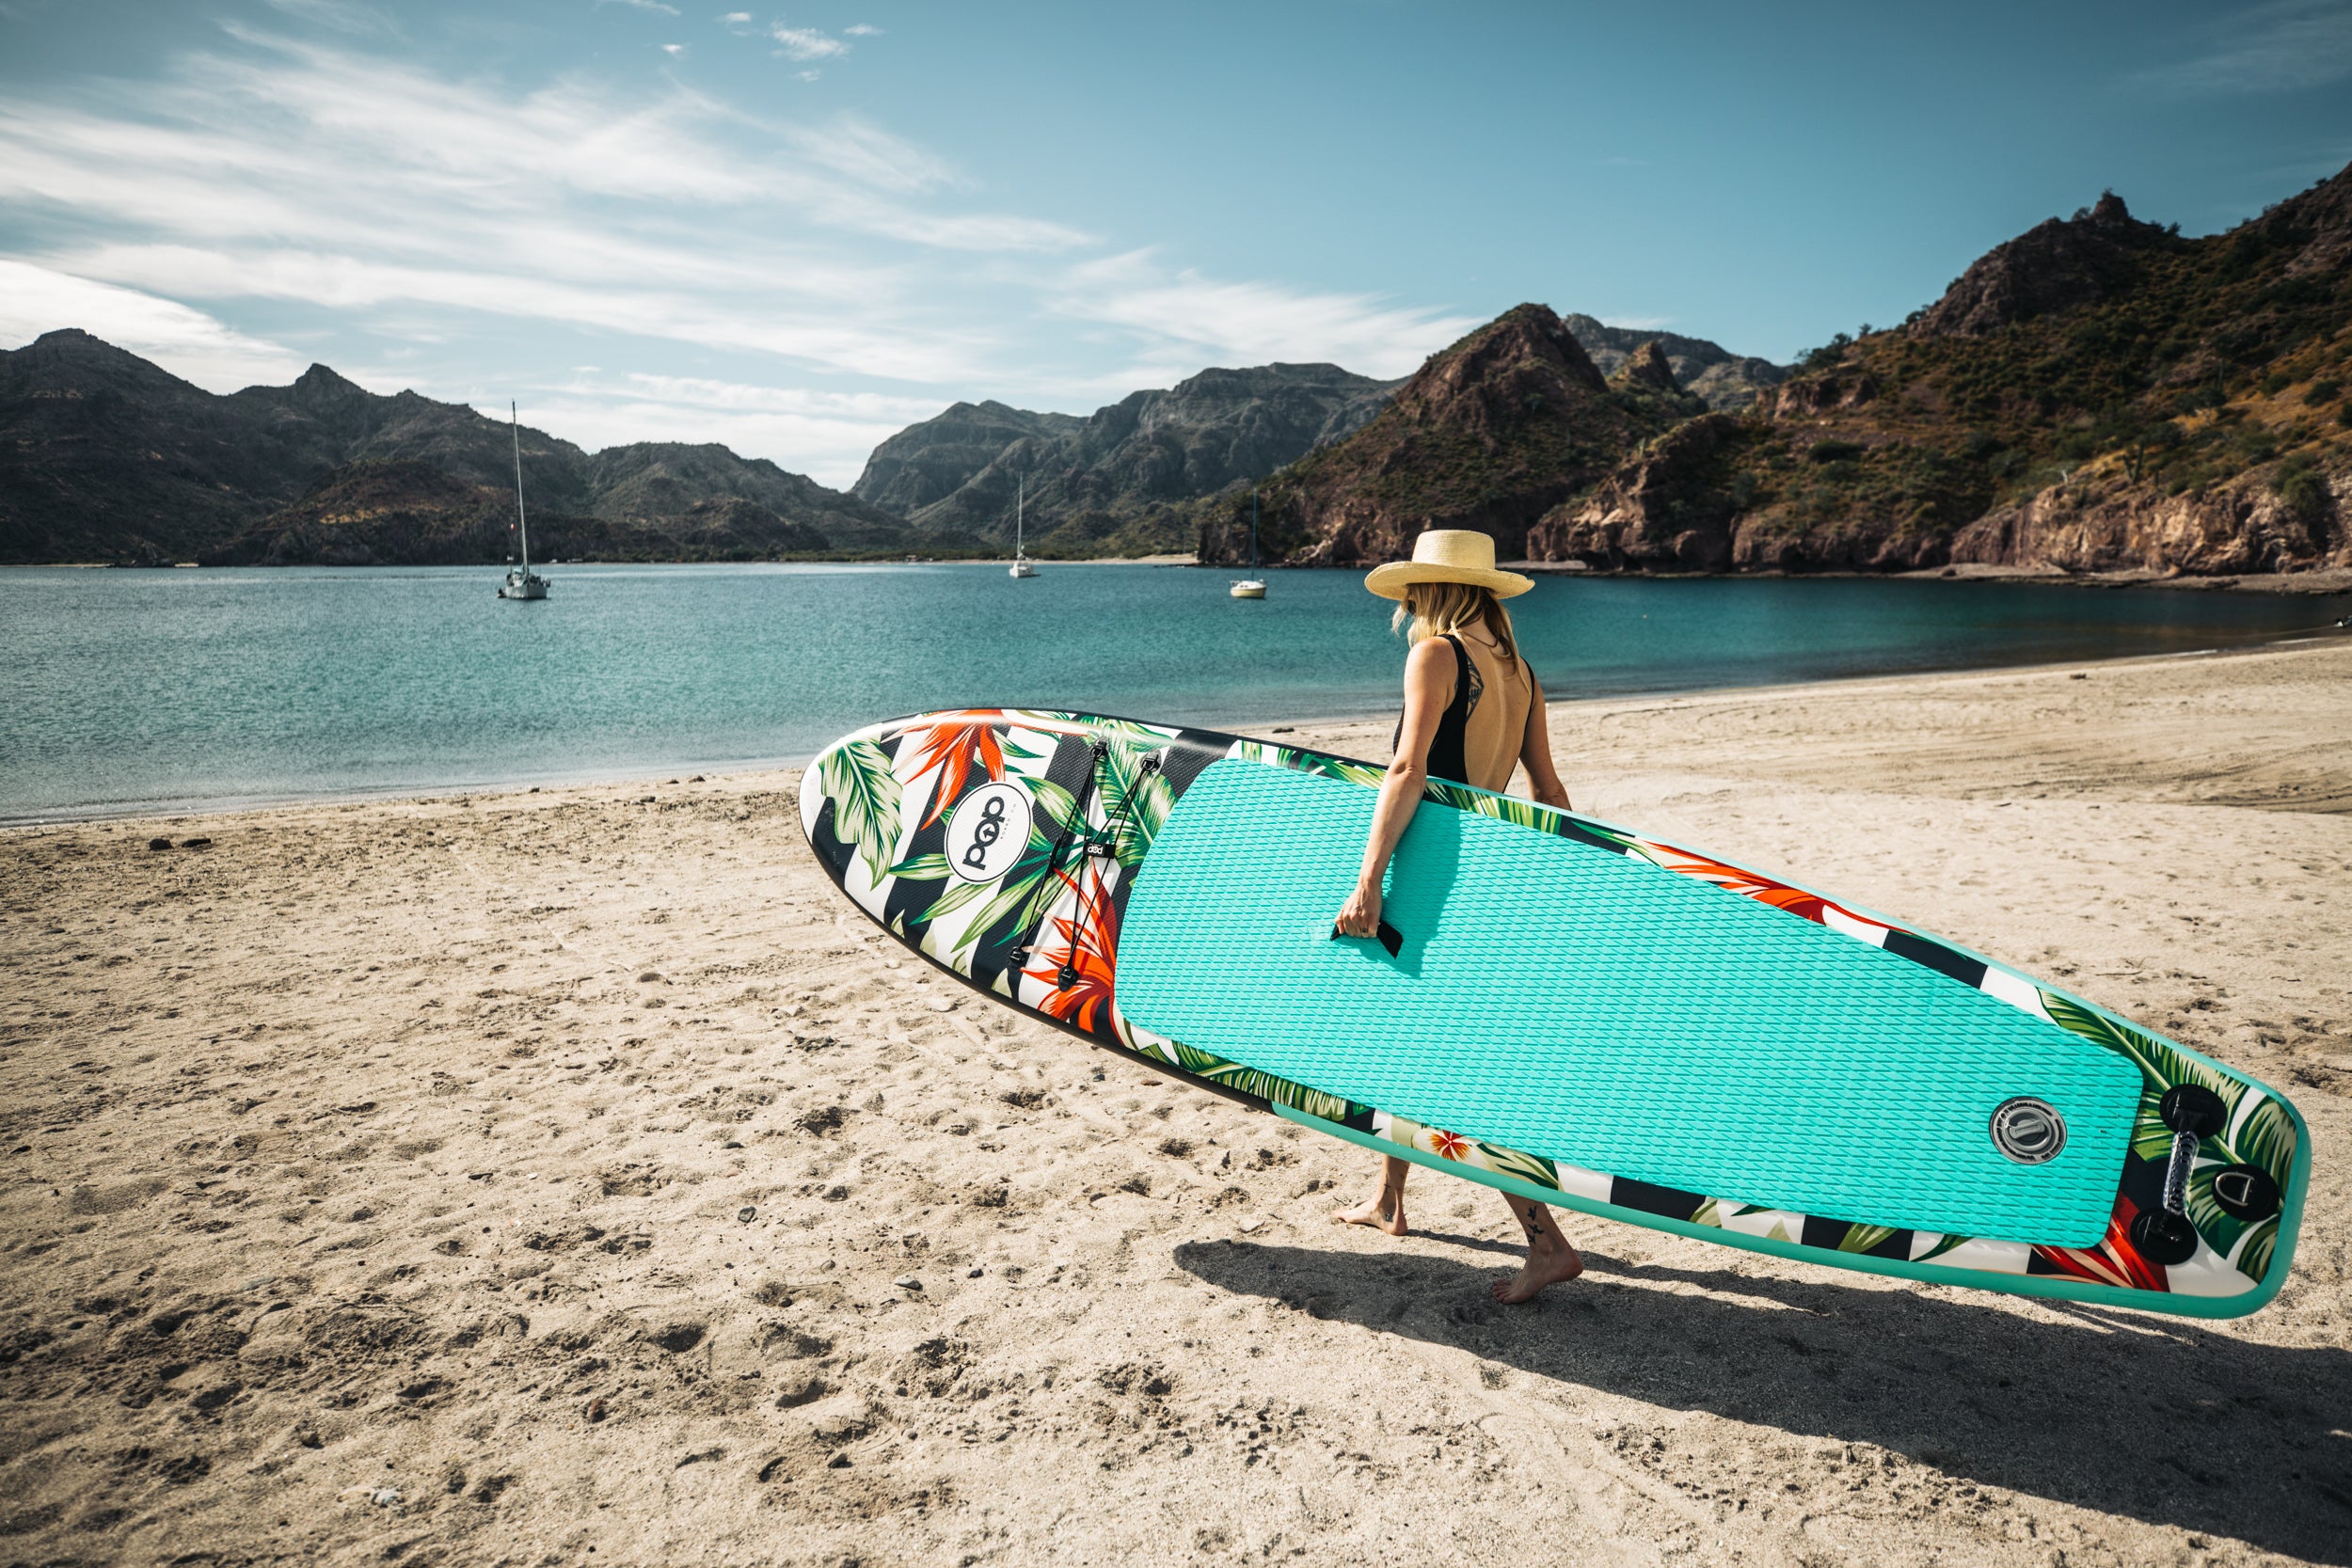 POP Board Co- Royal Hawaiian Inflatable SUP